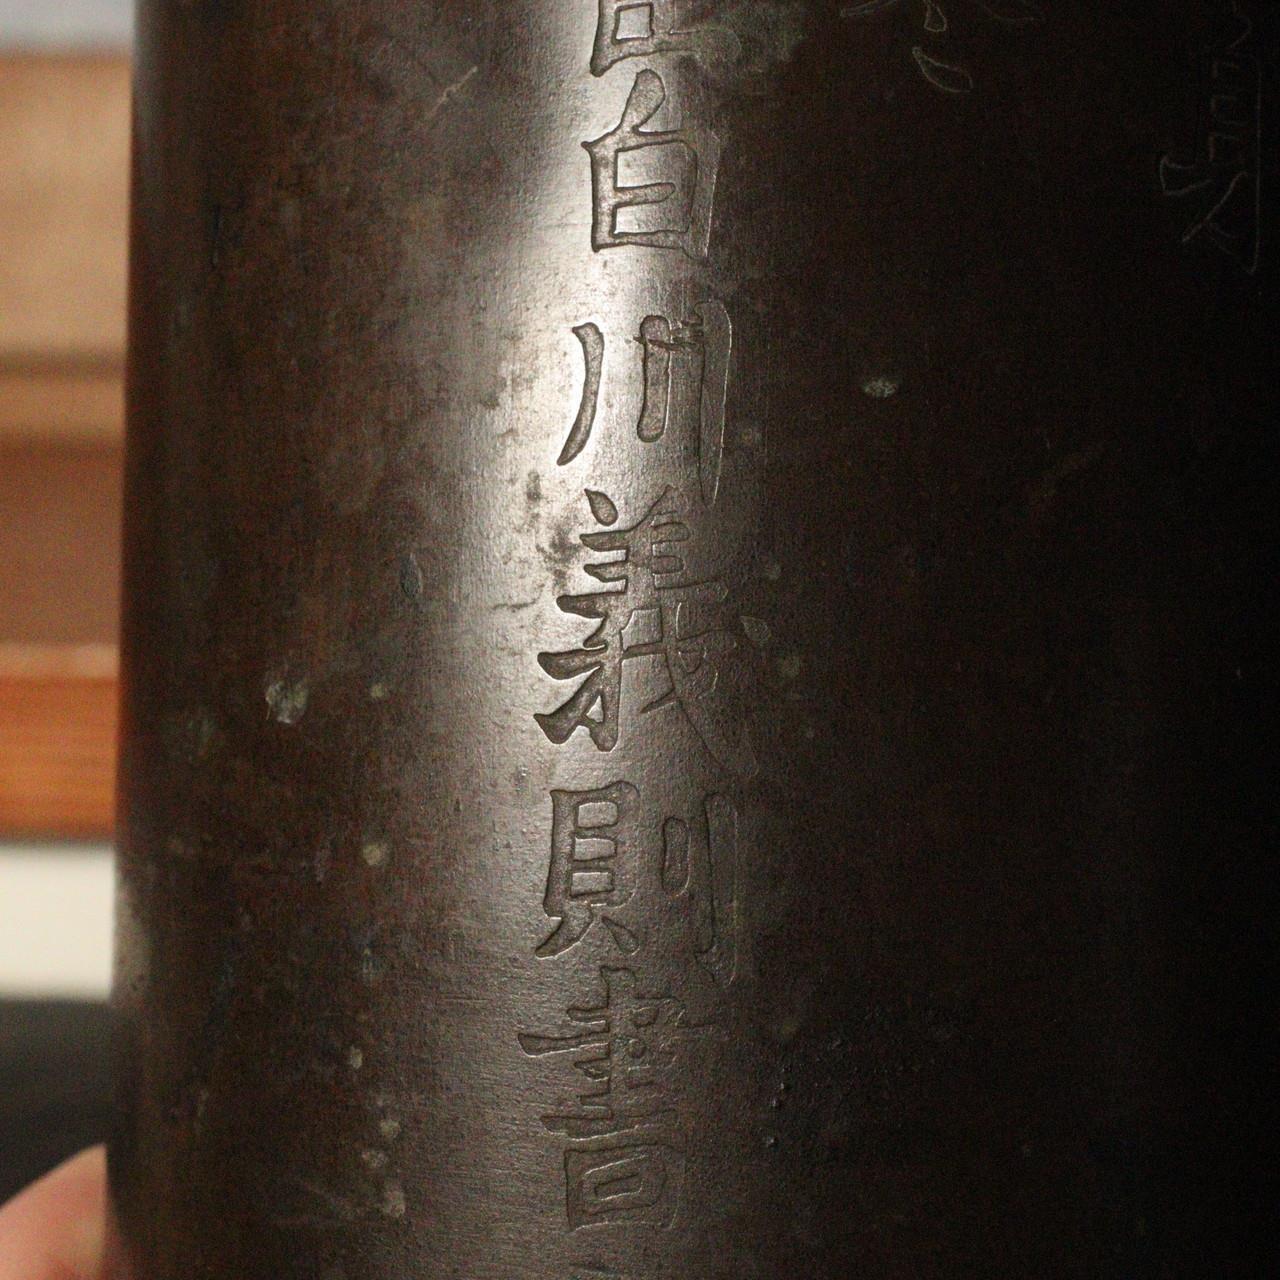 Japanese vintage copper vase Flower signed BV449